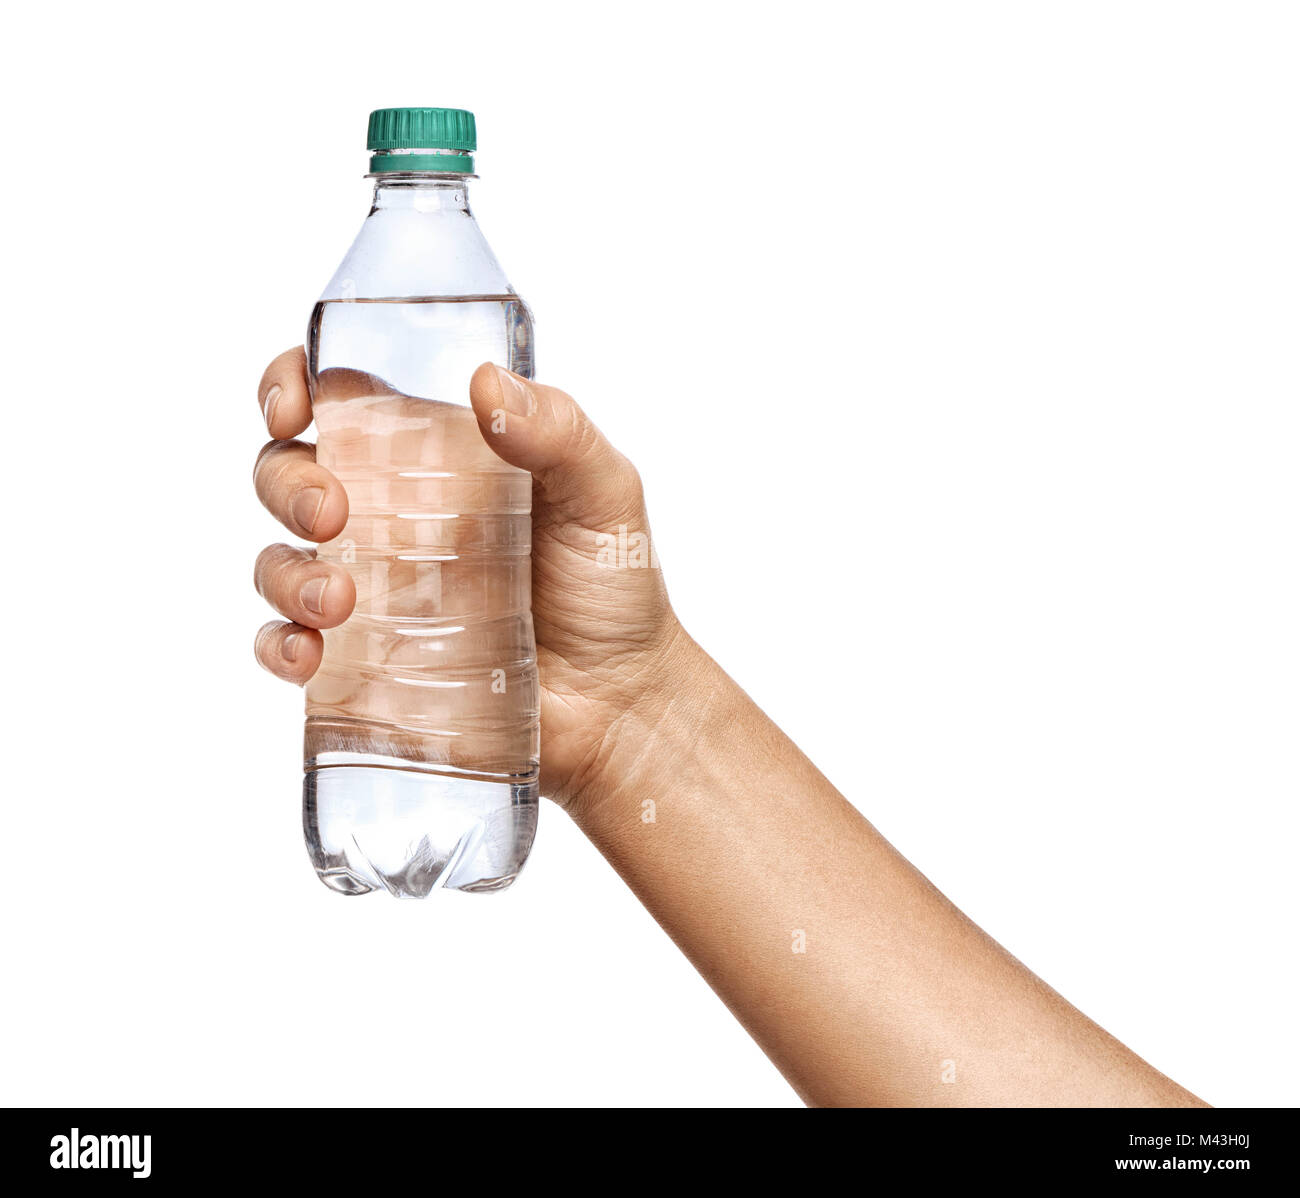 La main de l'homme est titulaire d'une bouteille d'eau isolé sur fond blanc. Close up. Produit de haute résolution Banque D'Images